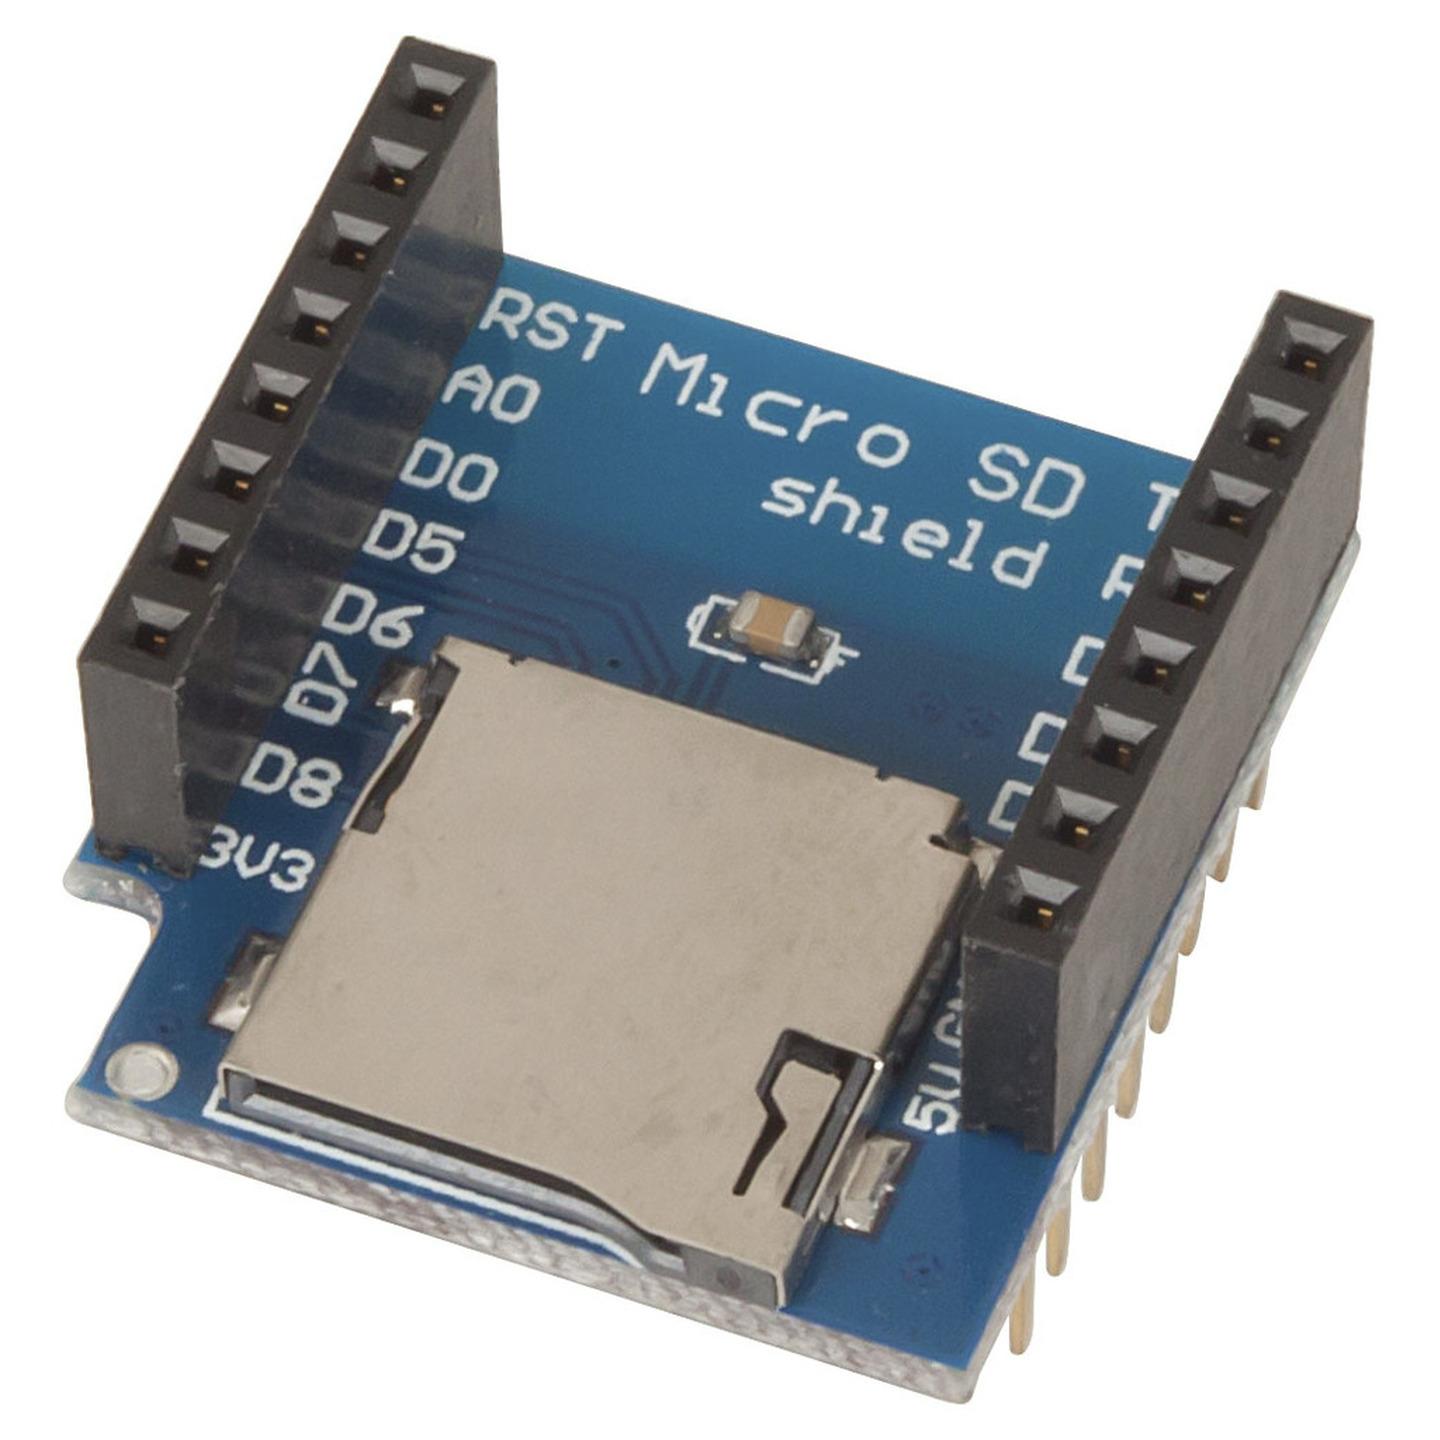 Micro SD Card Shield for Wi-Fi Mini